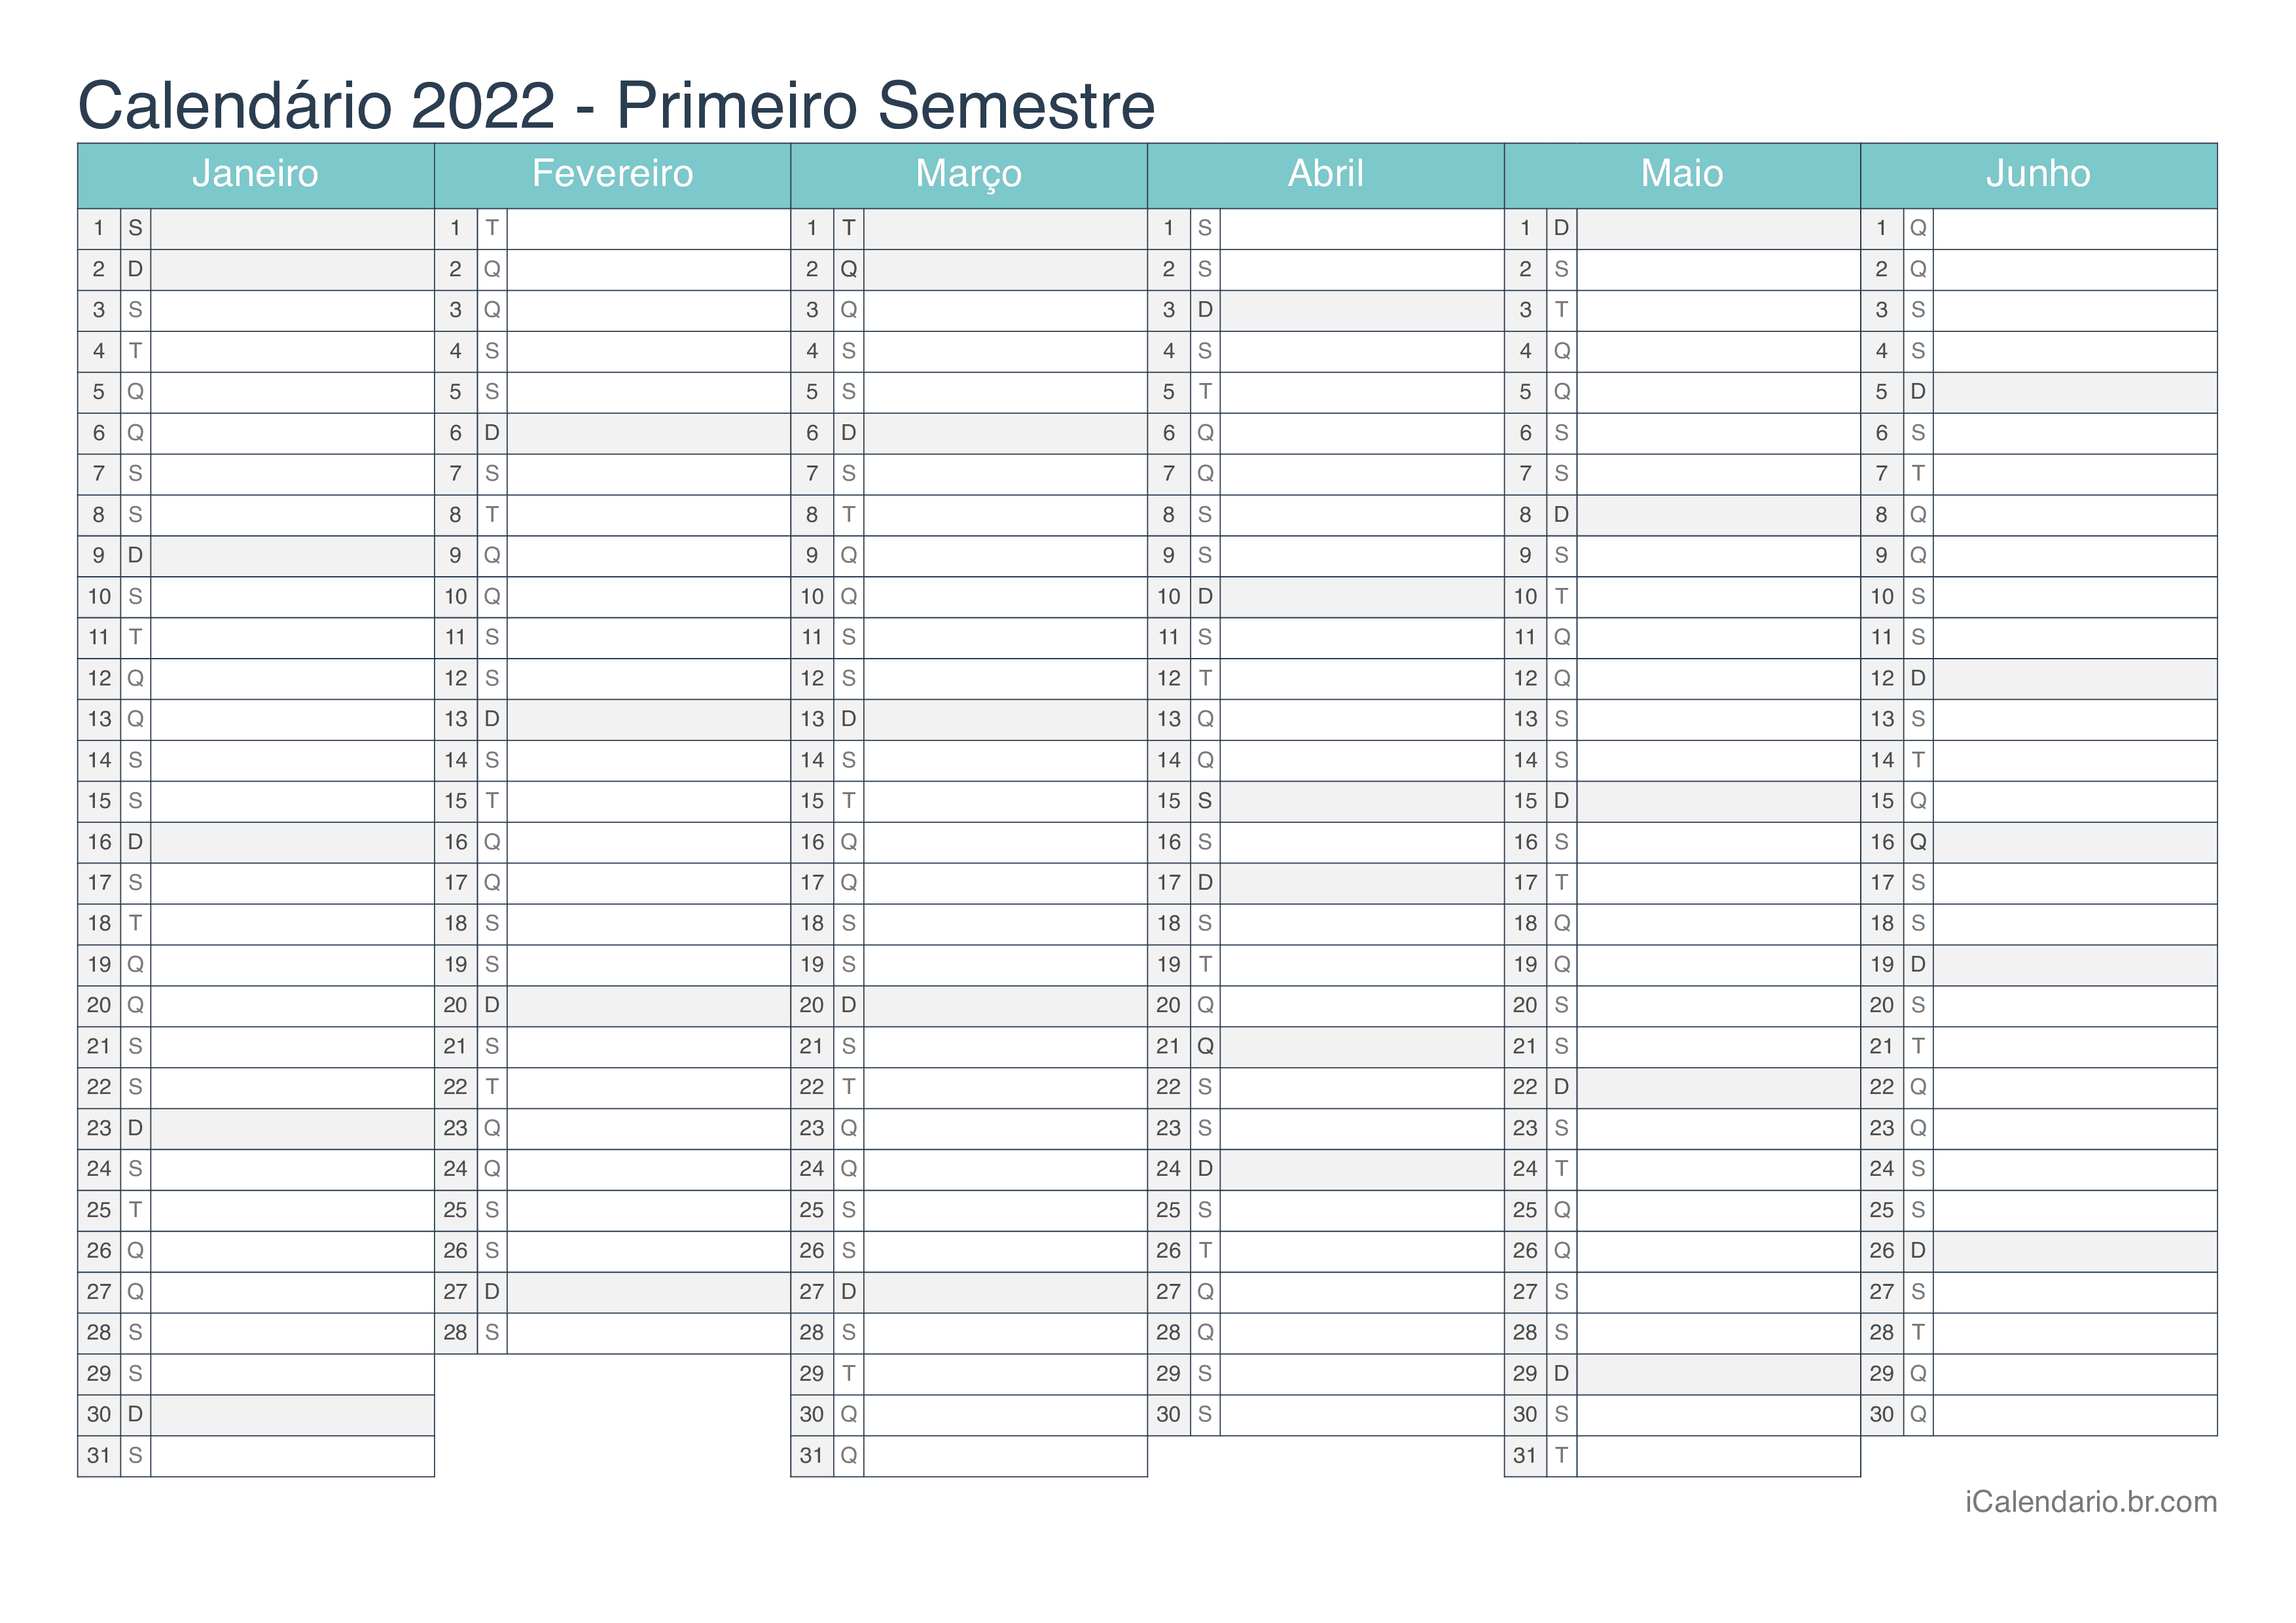 Calendário por semestre 2022 - Turquesa